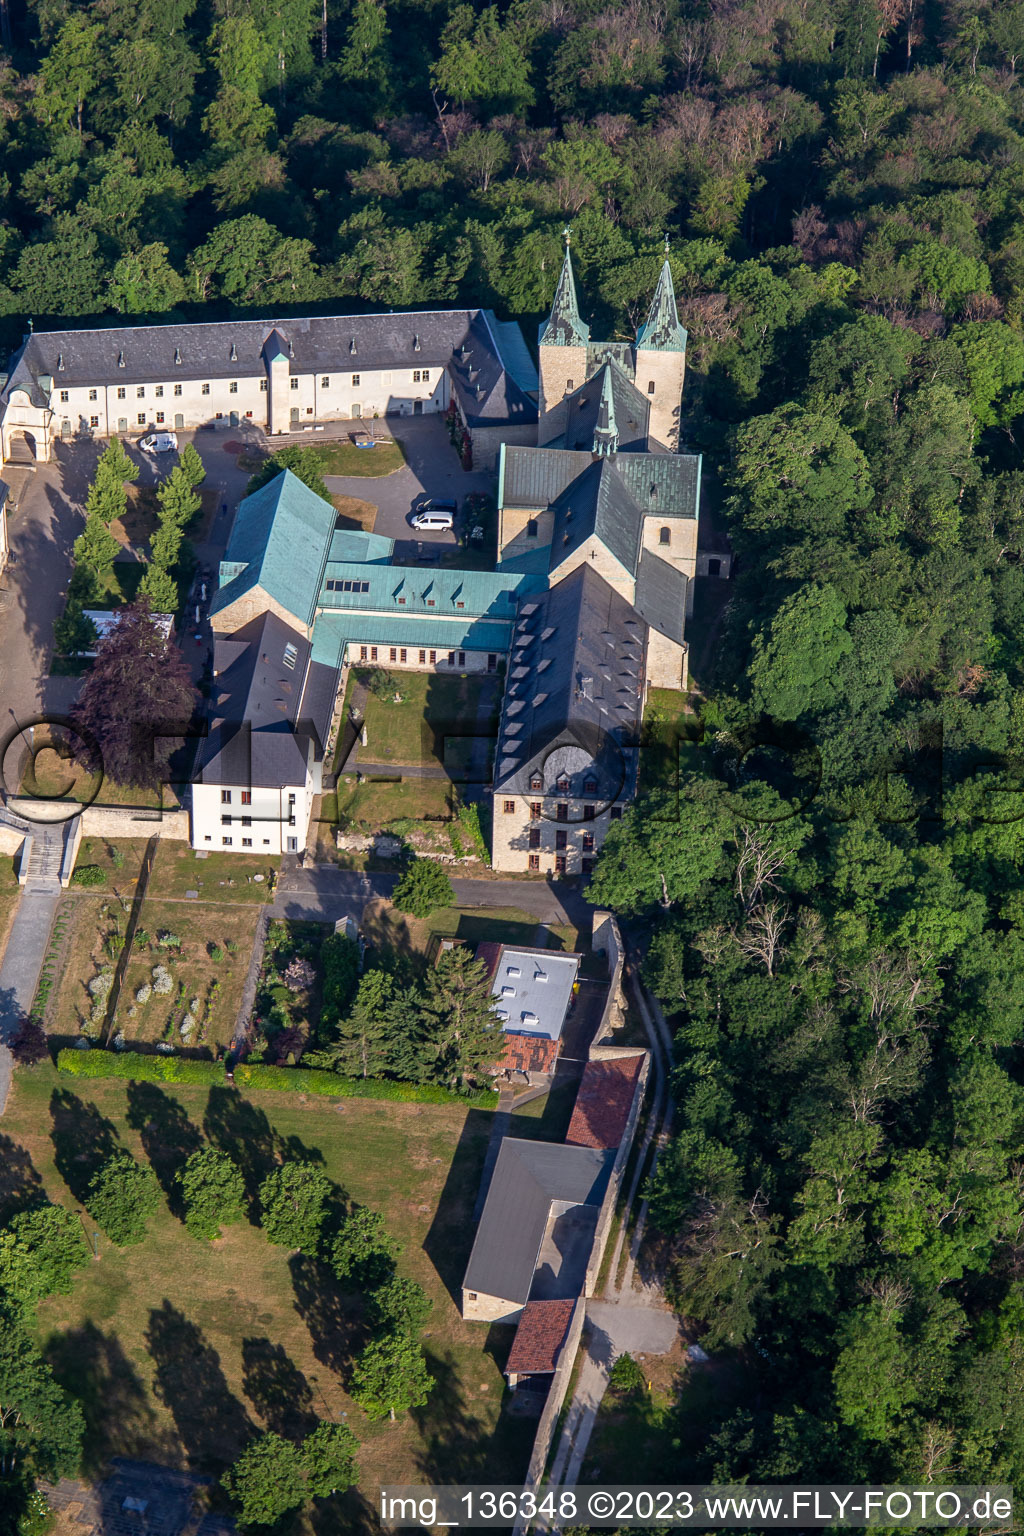 Monastère de Huysbourg à le quartier Röderhof in Huy dans le département Saxe-Anhalt, Allemagne hors des airs